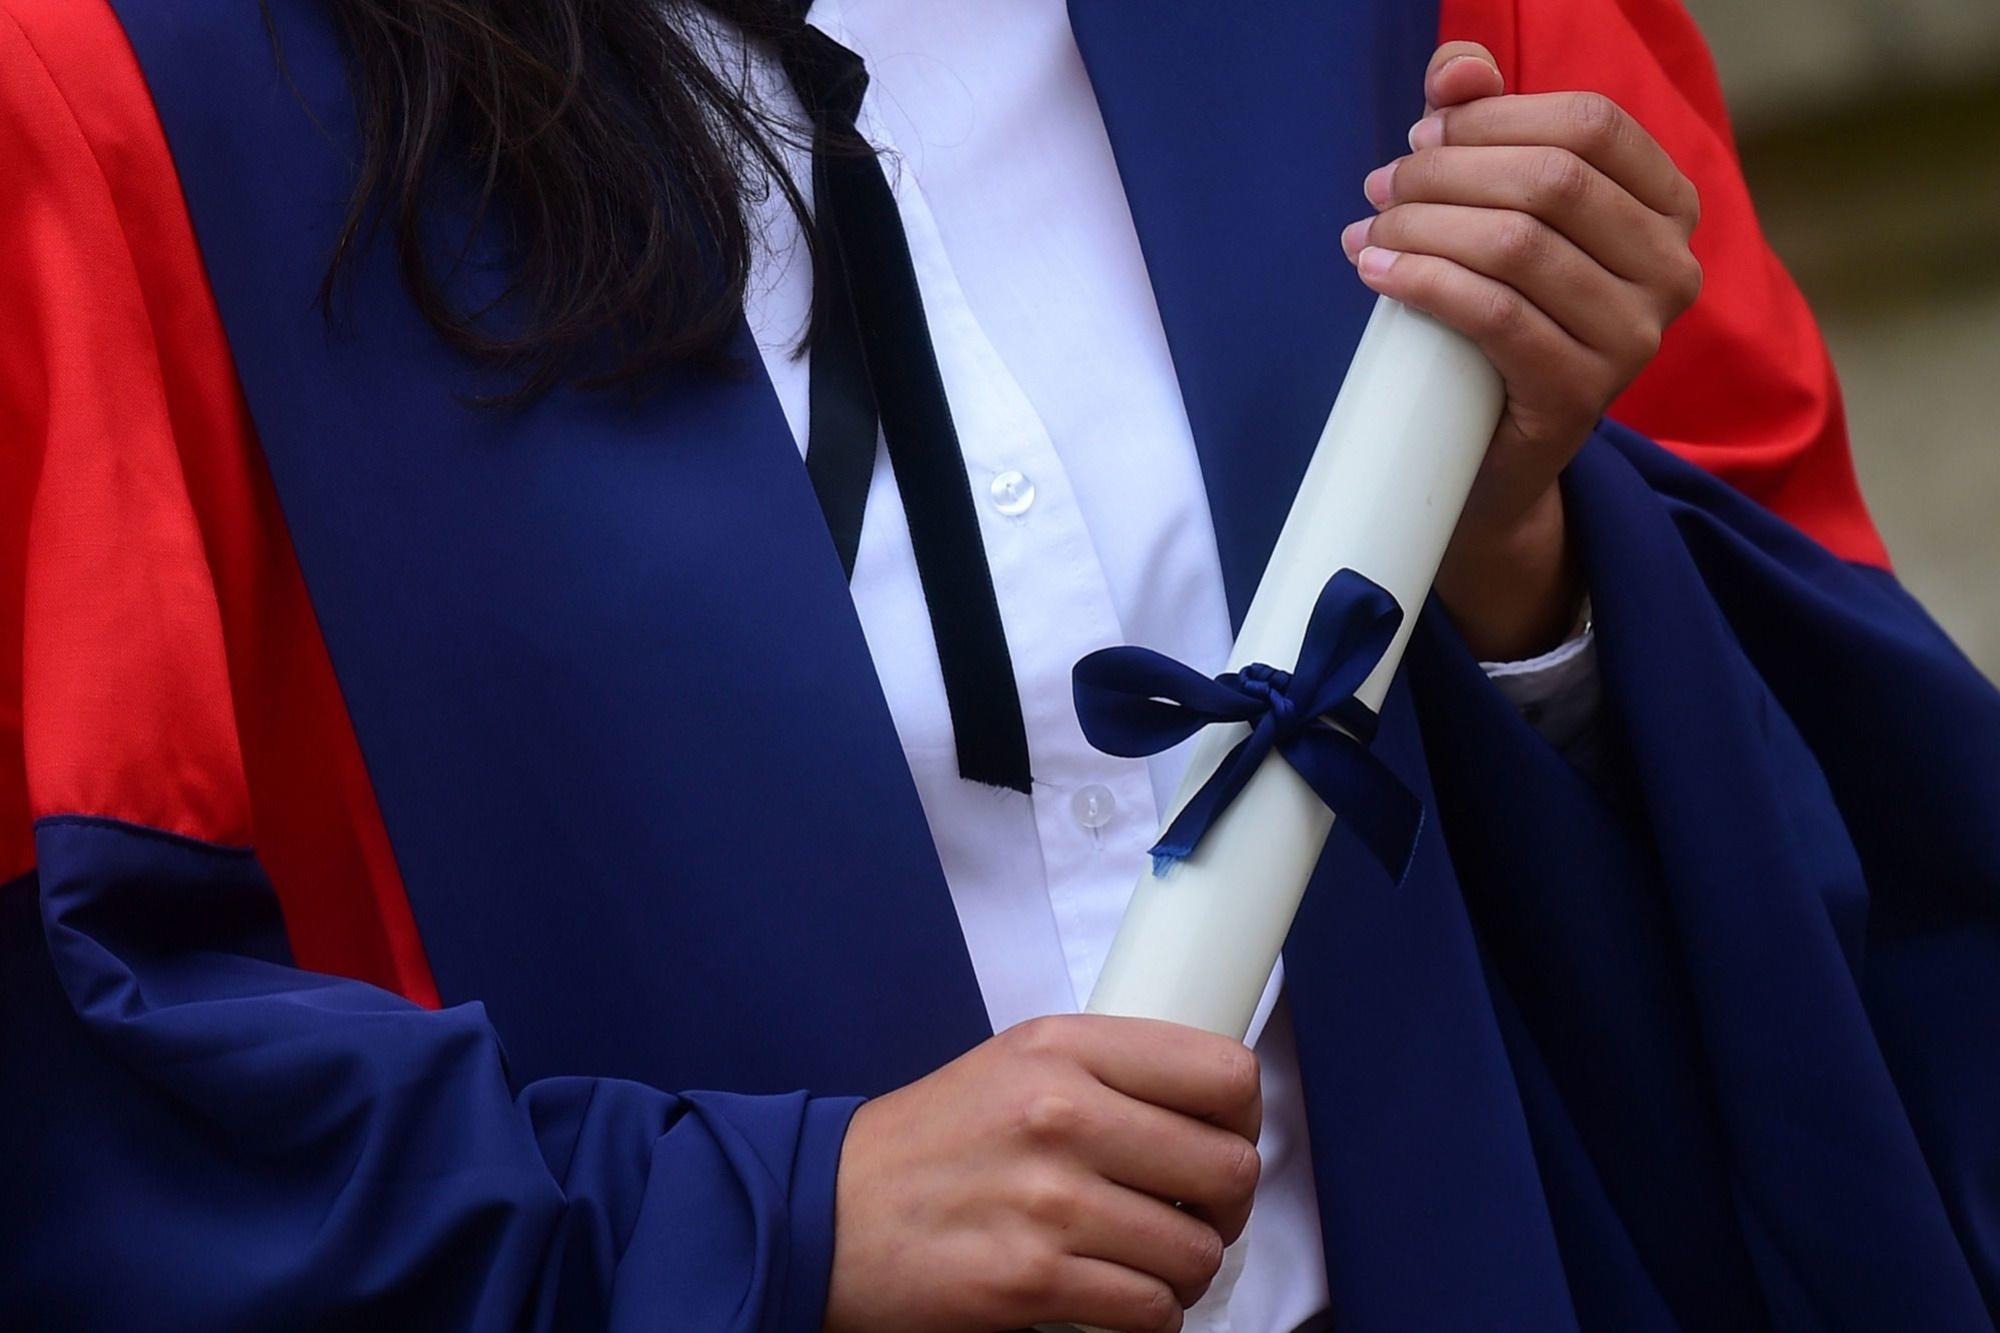 Cérémonie de remise de diplômes à l'université d'Oxford.